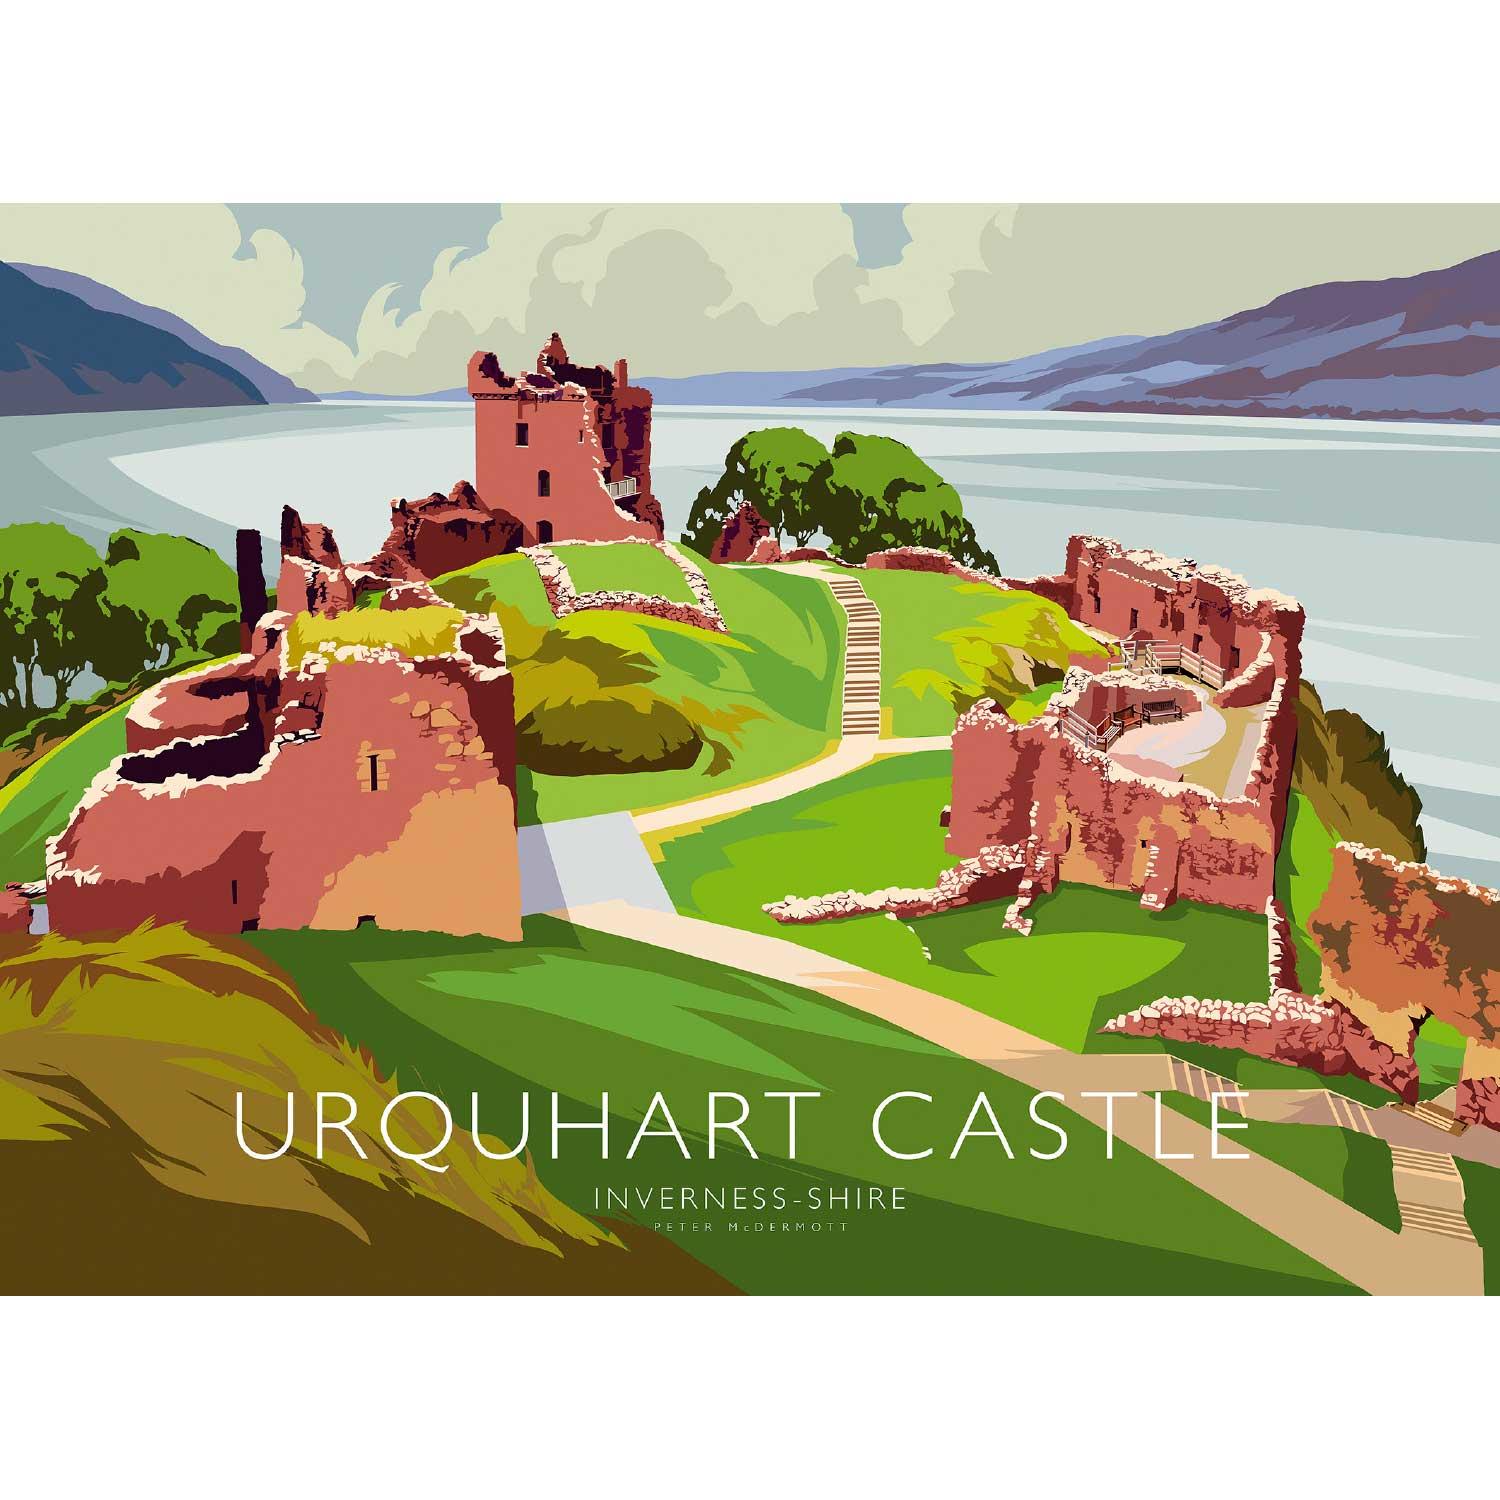 Urquhart Castle by Peter McDermott